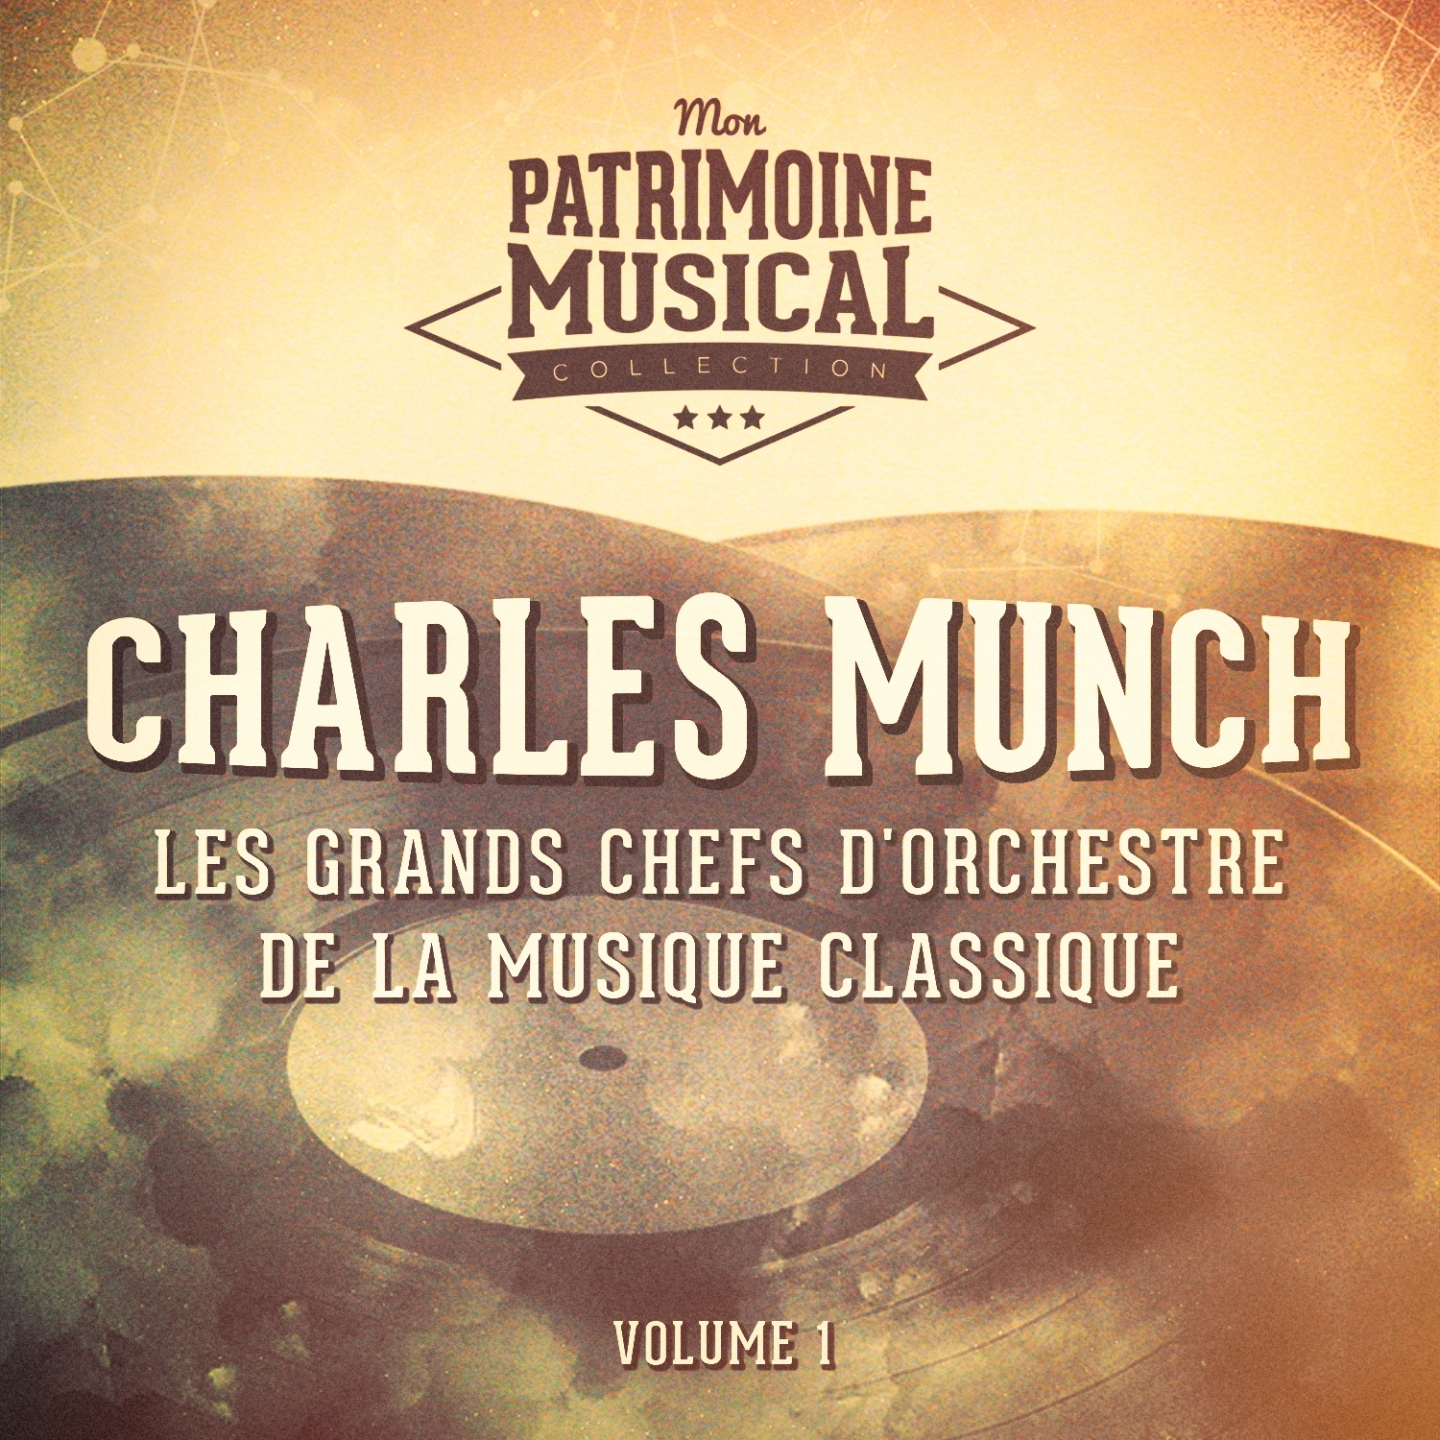 Les grands chefs d'orchestre de la musique classique : Charles Munch, Vol. 1